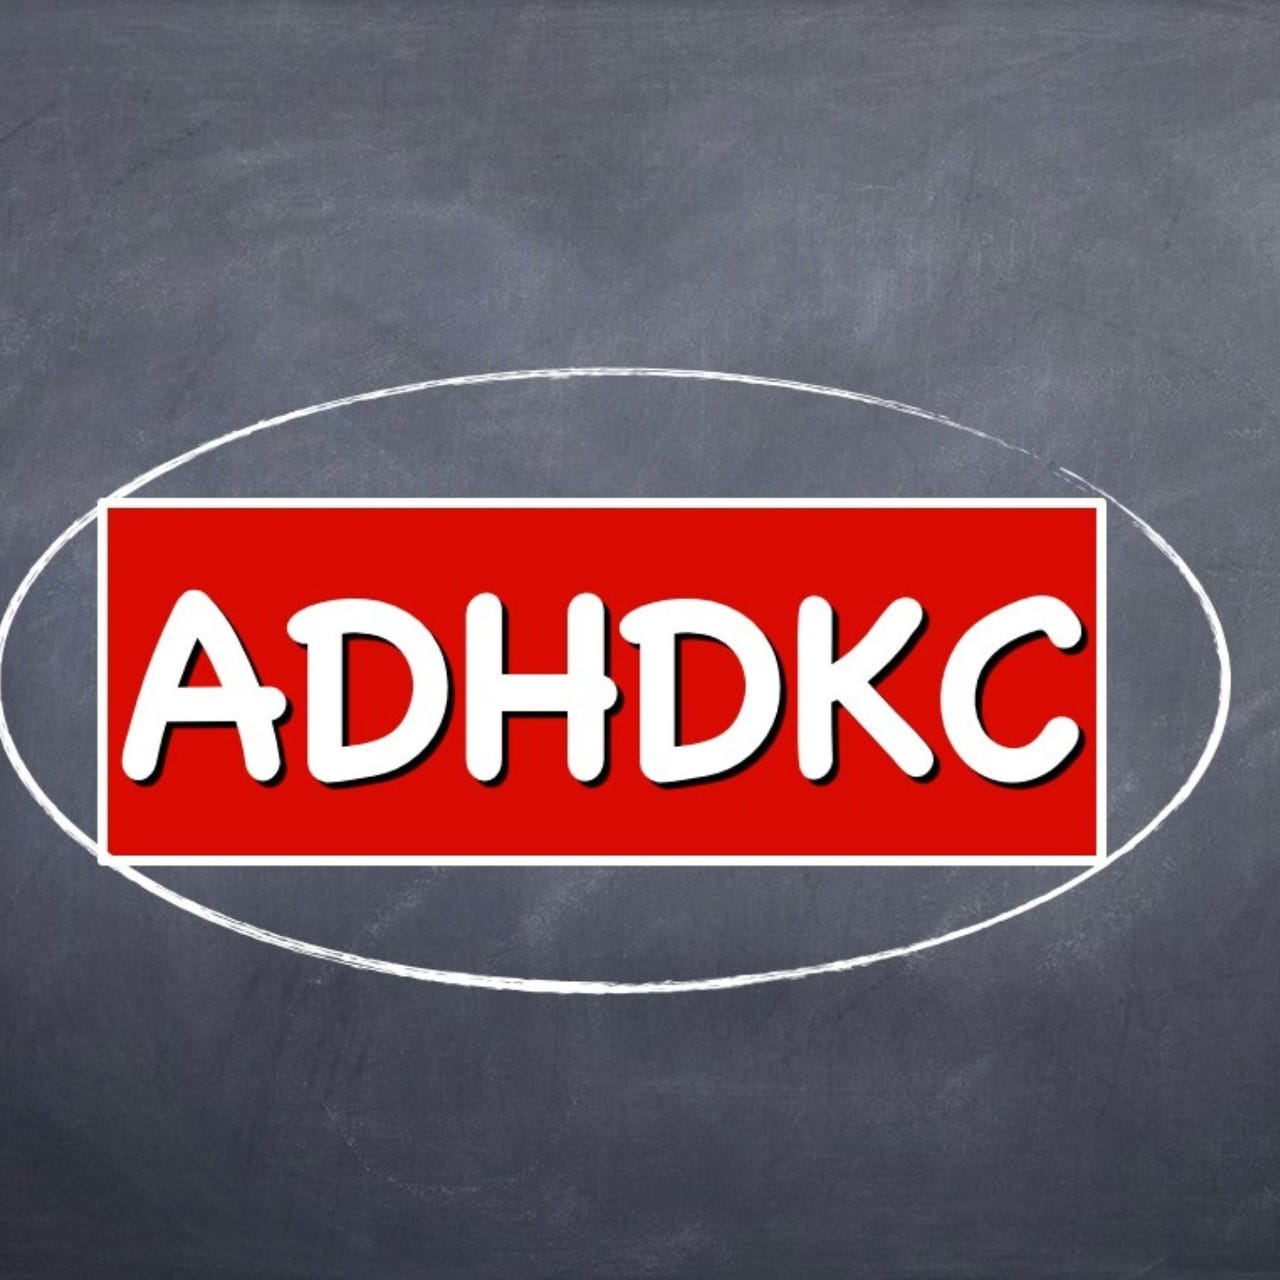 Artwork for ADHDKC’s Newsletter